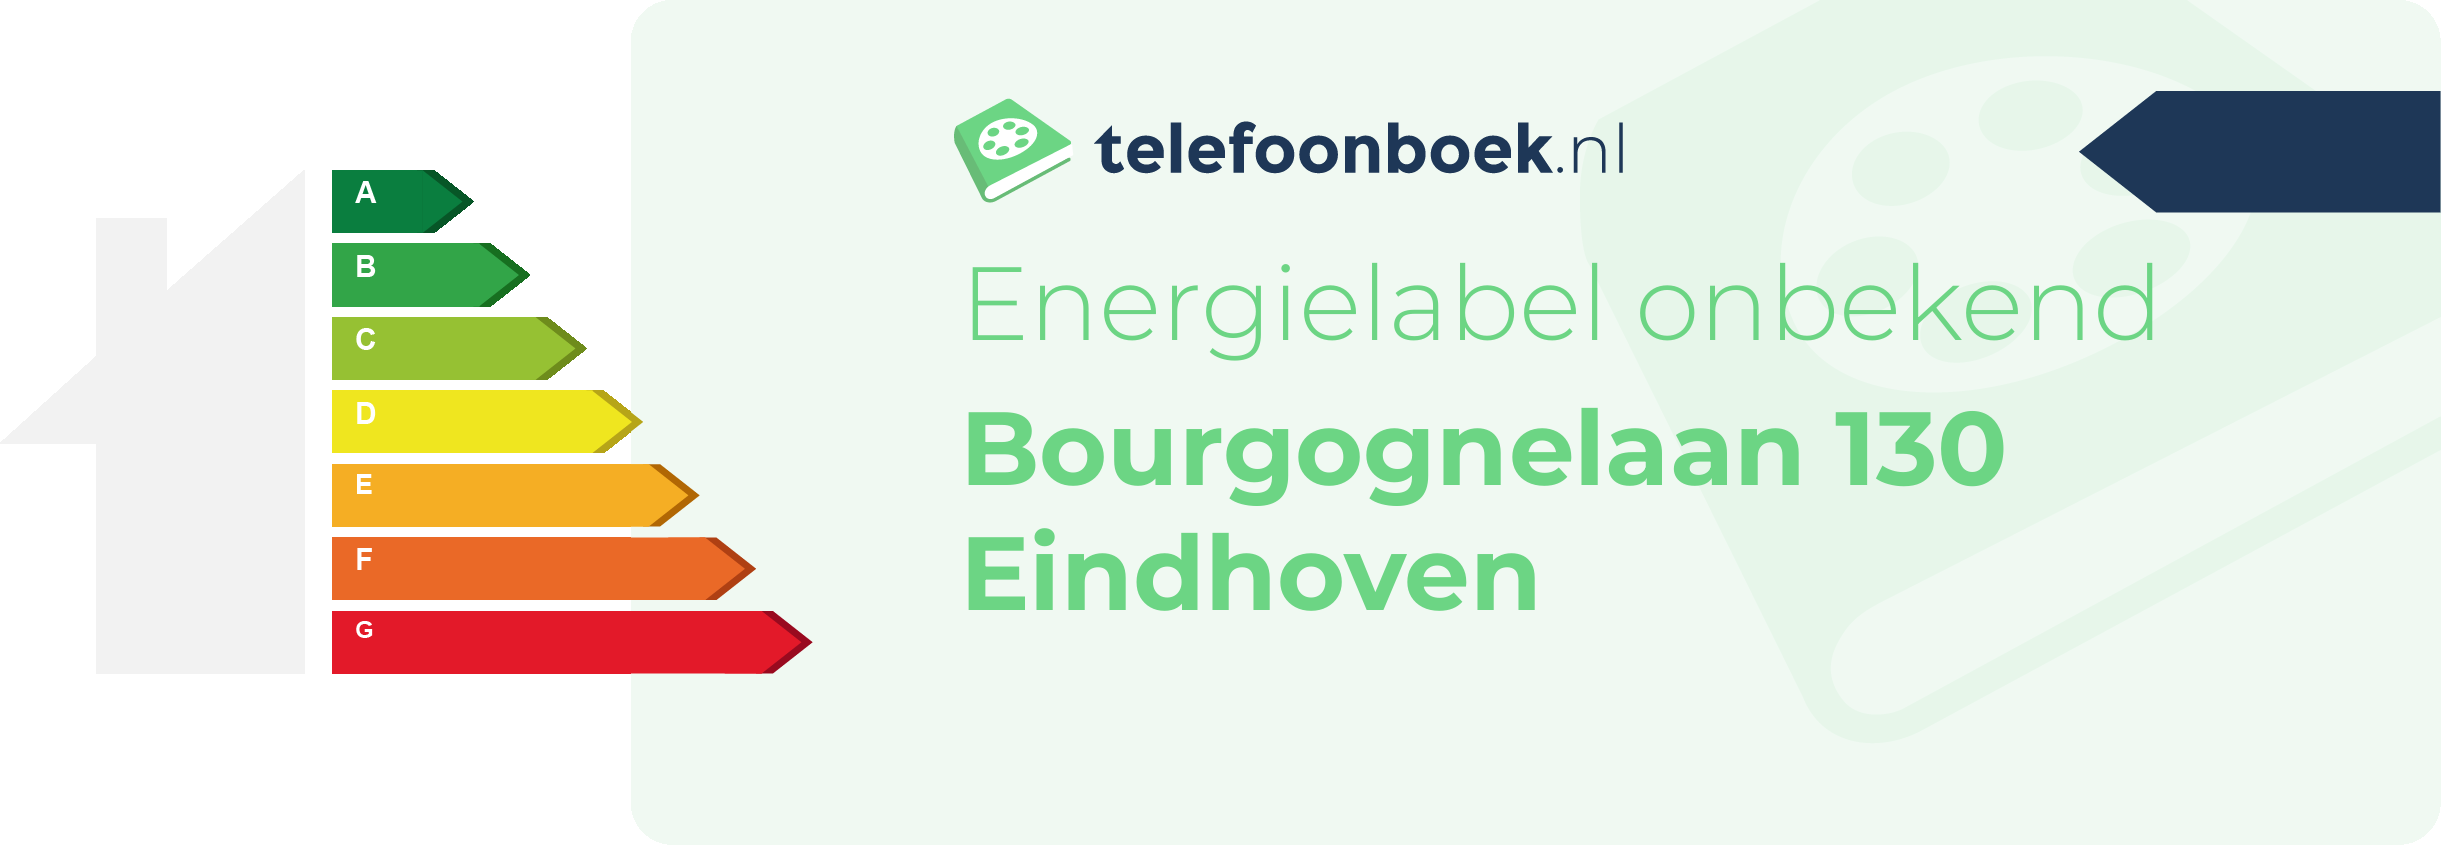 Energielabel Bourgognelaan 130 Eindhoven